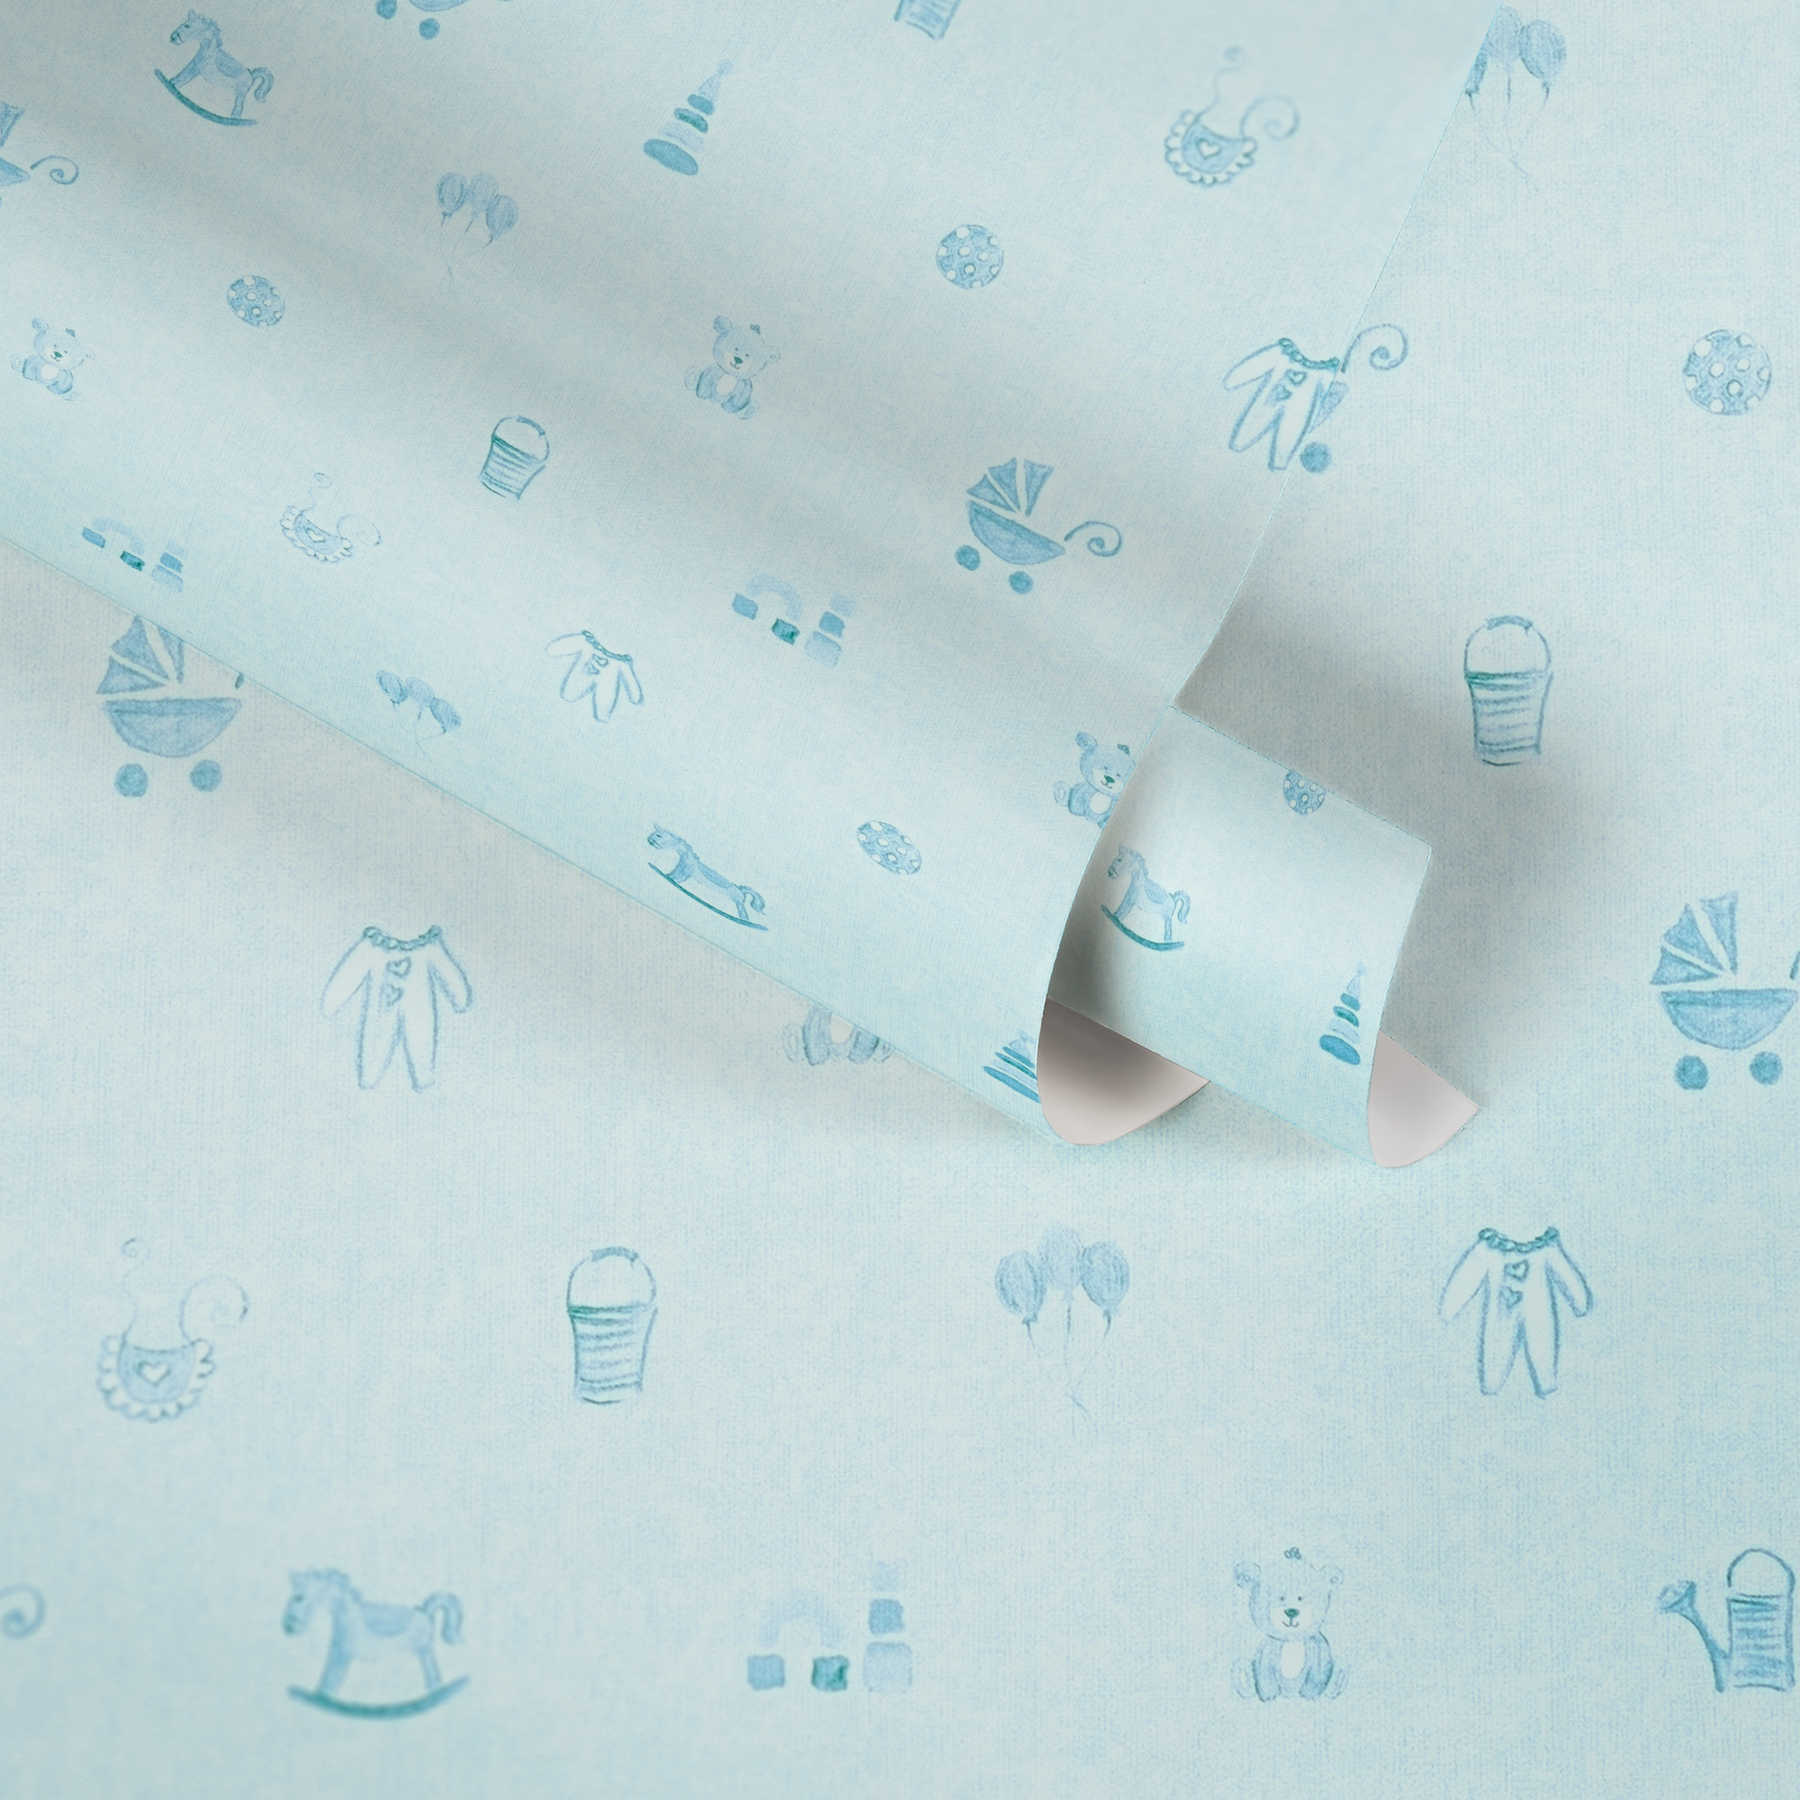             Chambre bébé garçon papier peint à motifs - Bleu
        